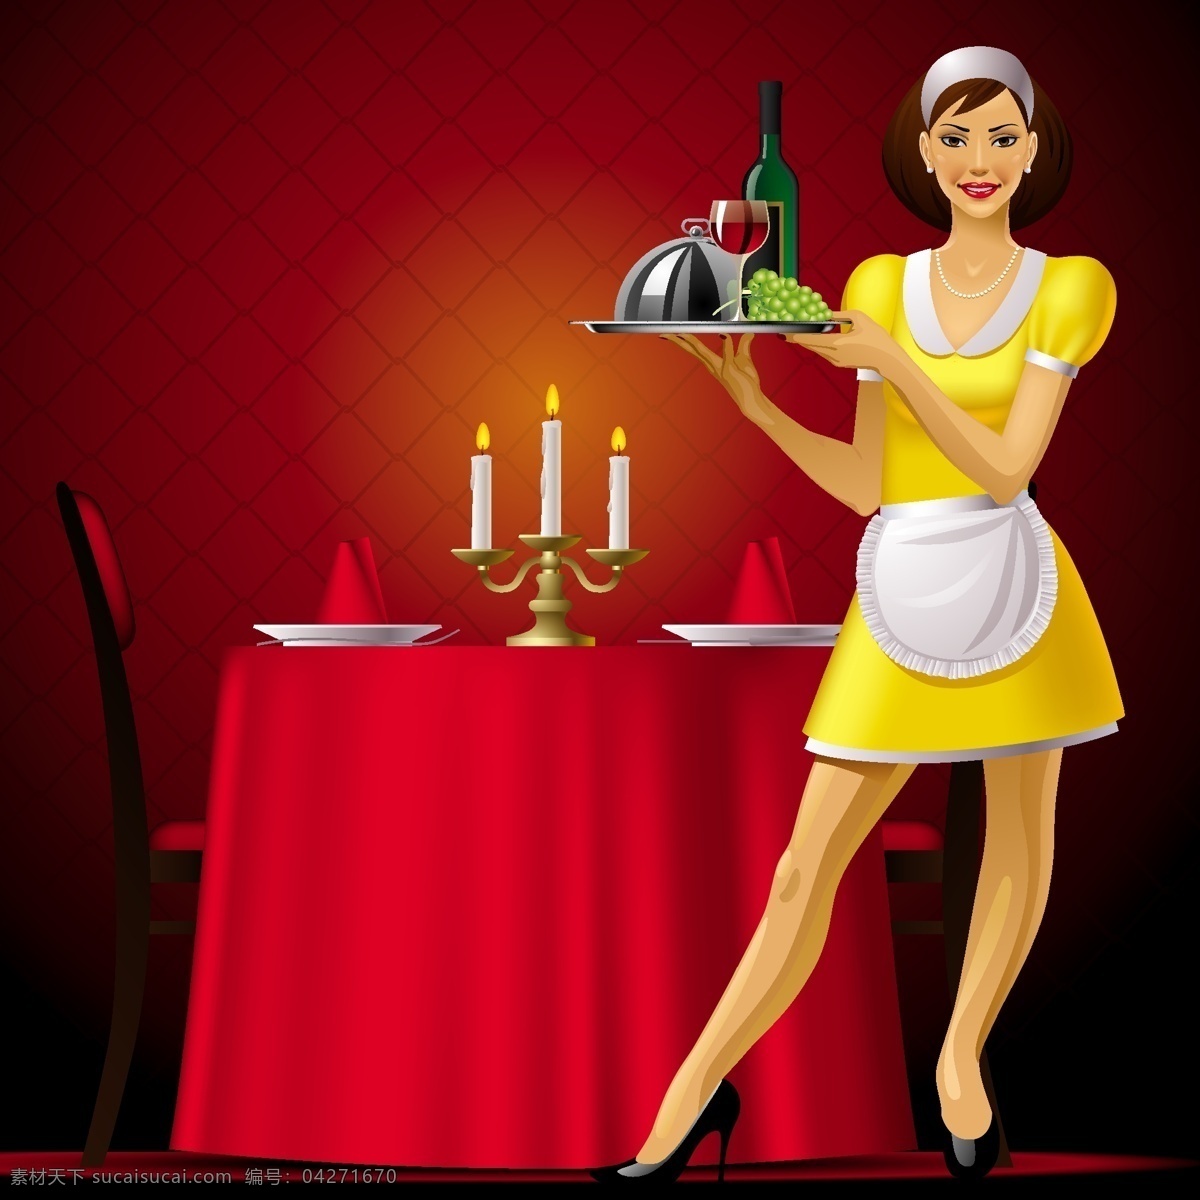 eps格式 餐厅 服务员 红布 蜡烛 女人 女性 盘子 葡萄 葡萄酒 外国 矢量 桌布 烛台 椅子 桌子 人物 矢量素材 矢量图 矢量人物